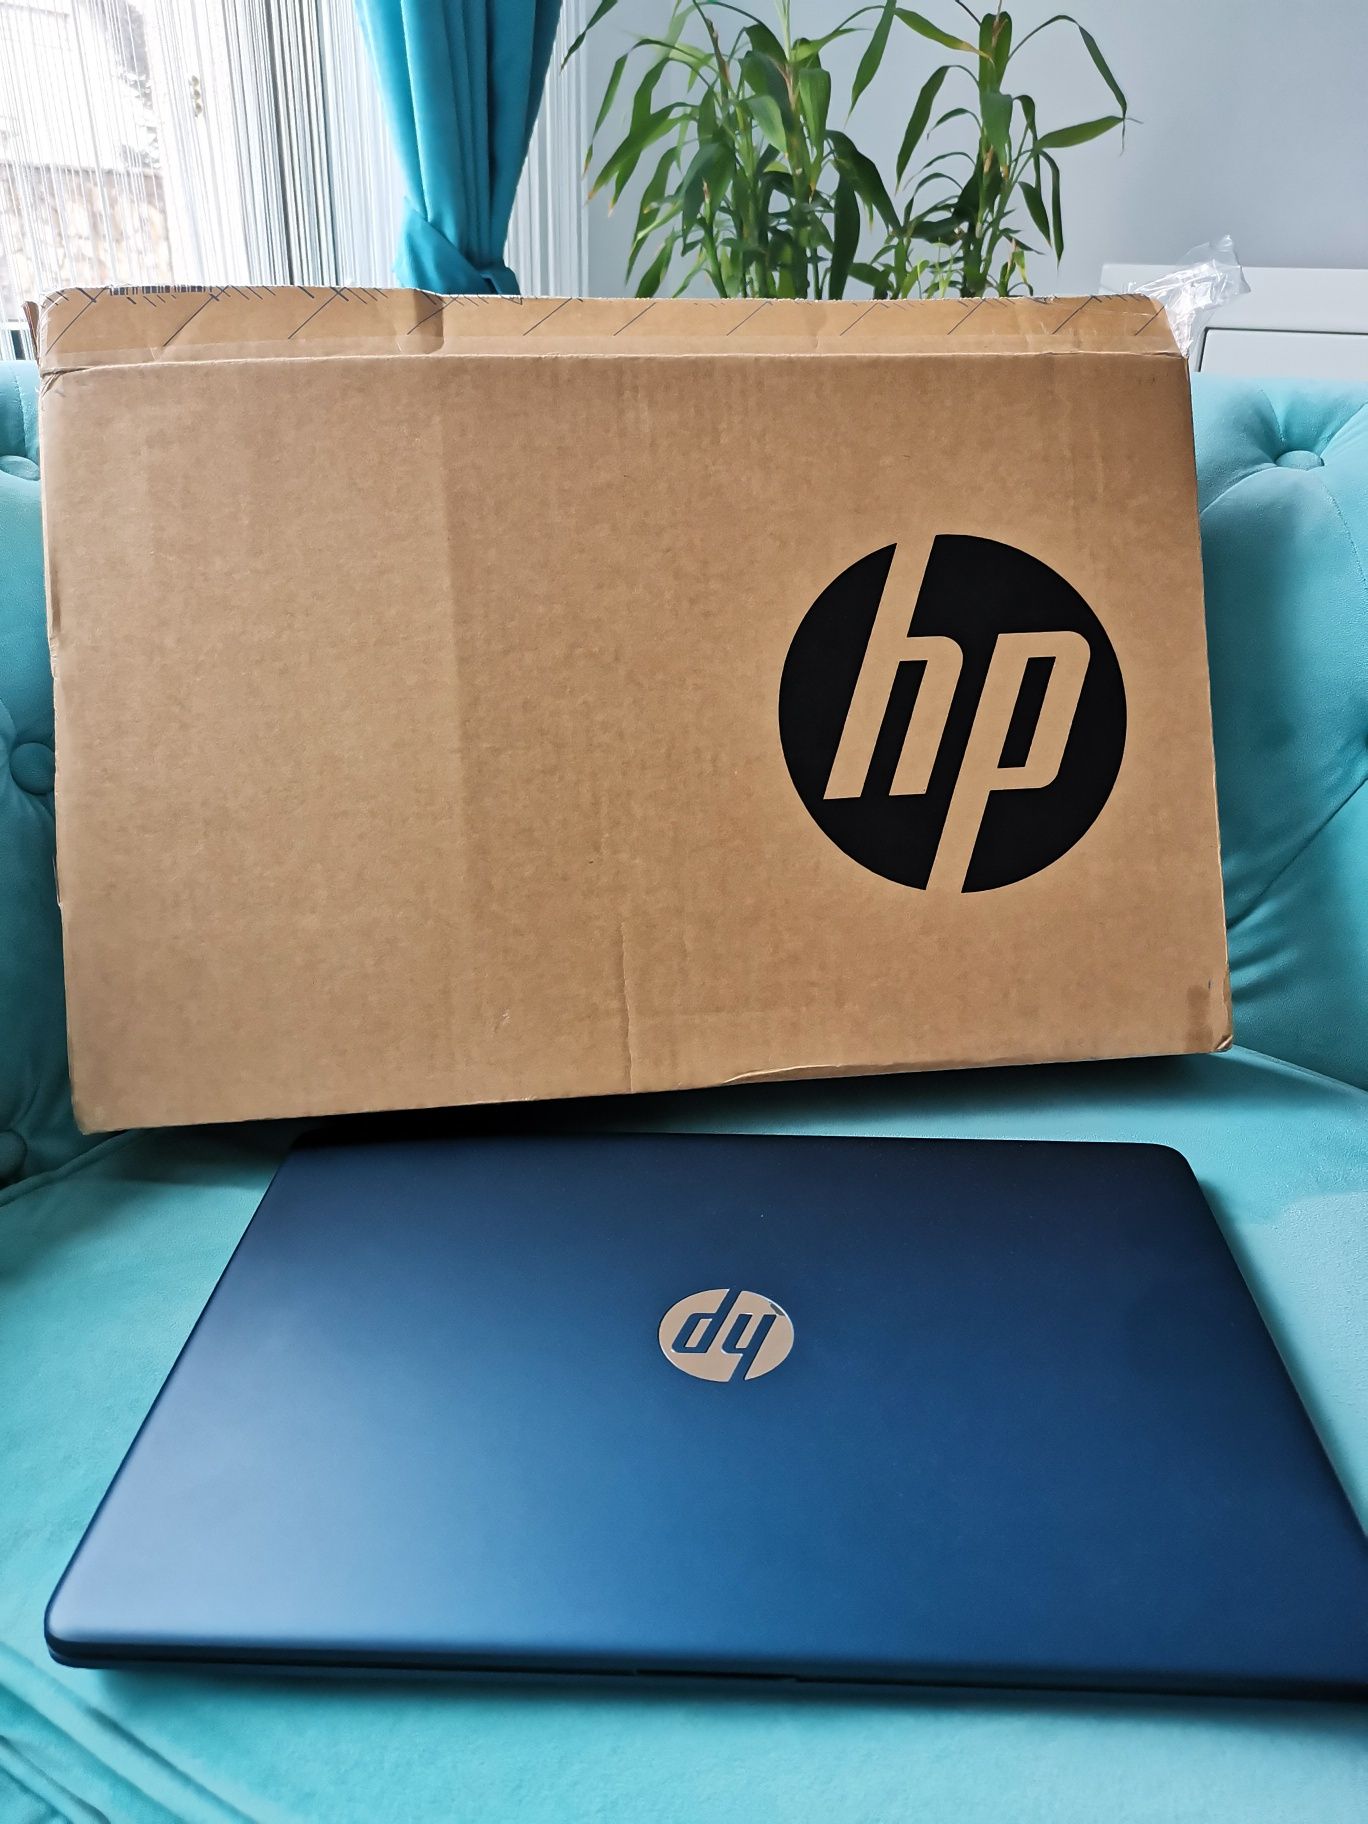 Vând laptop HP în cutie